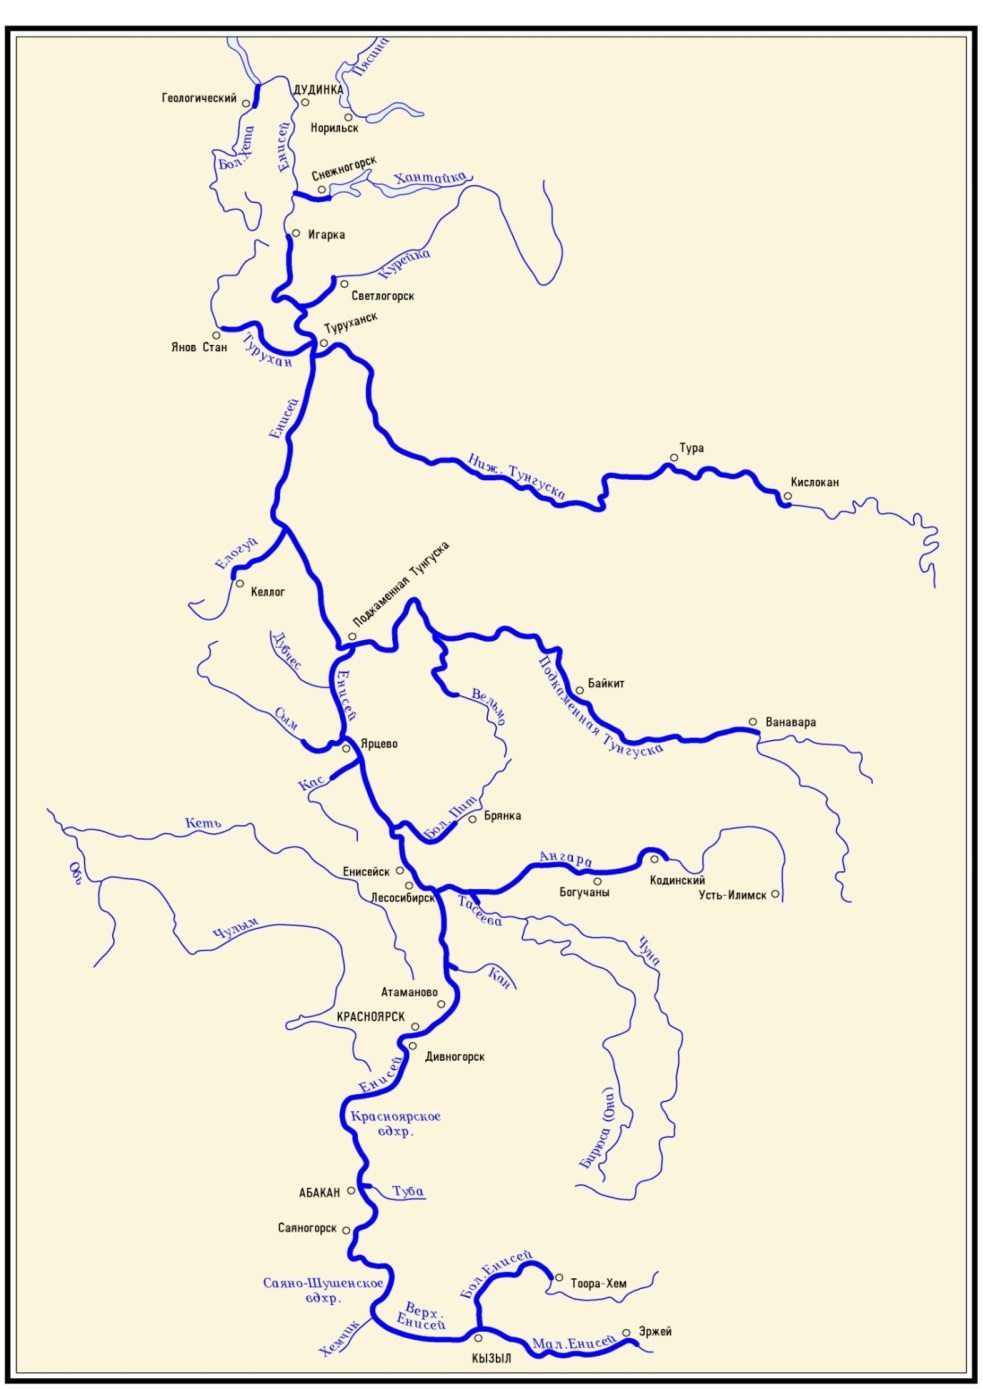 Схема бассейна реки Енисей